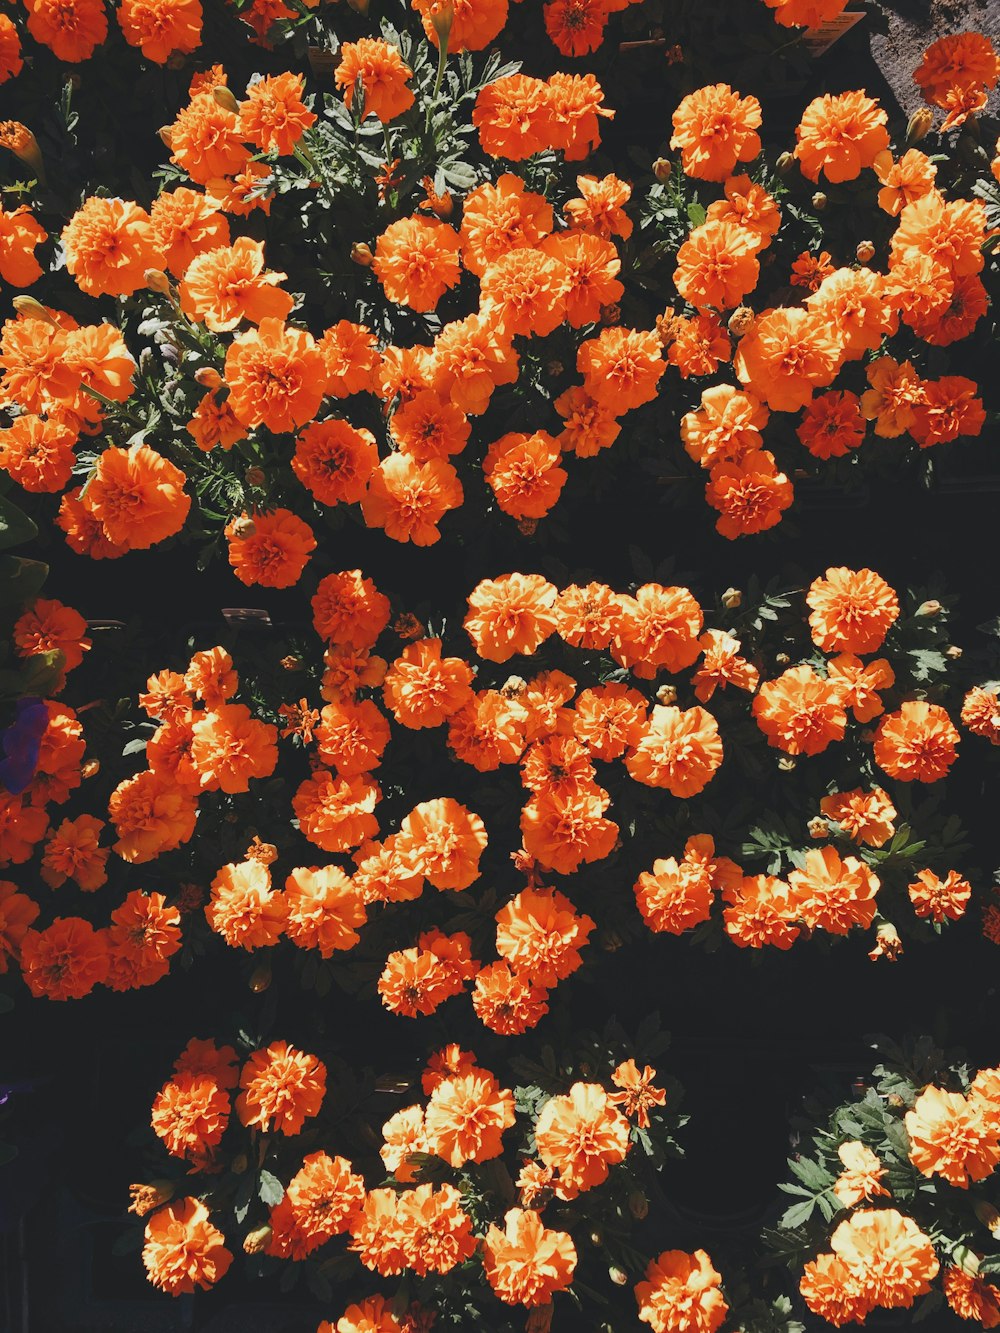 fiori dai petali arancioni che sbocciano durante il giorno